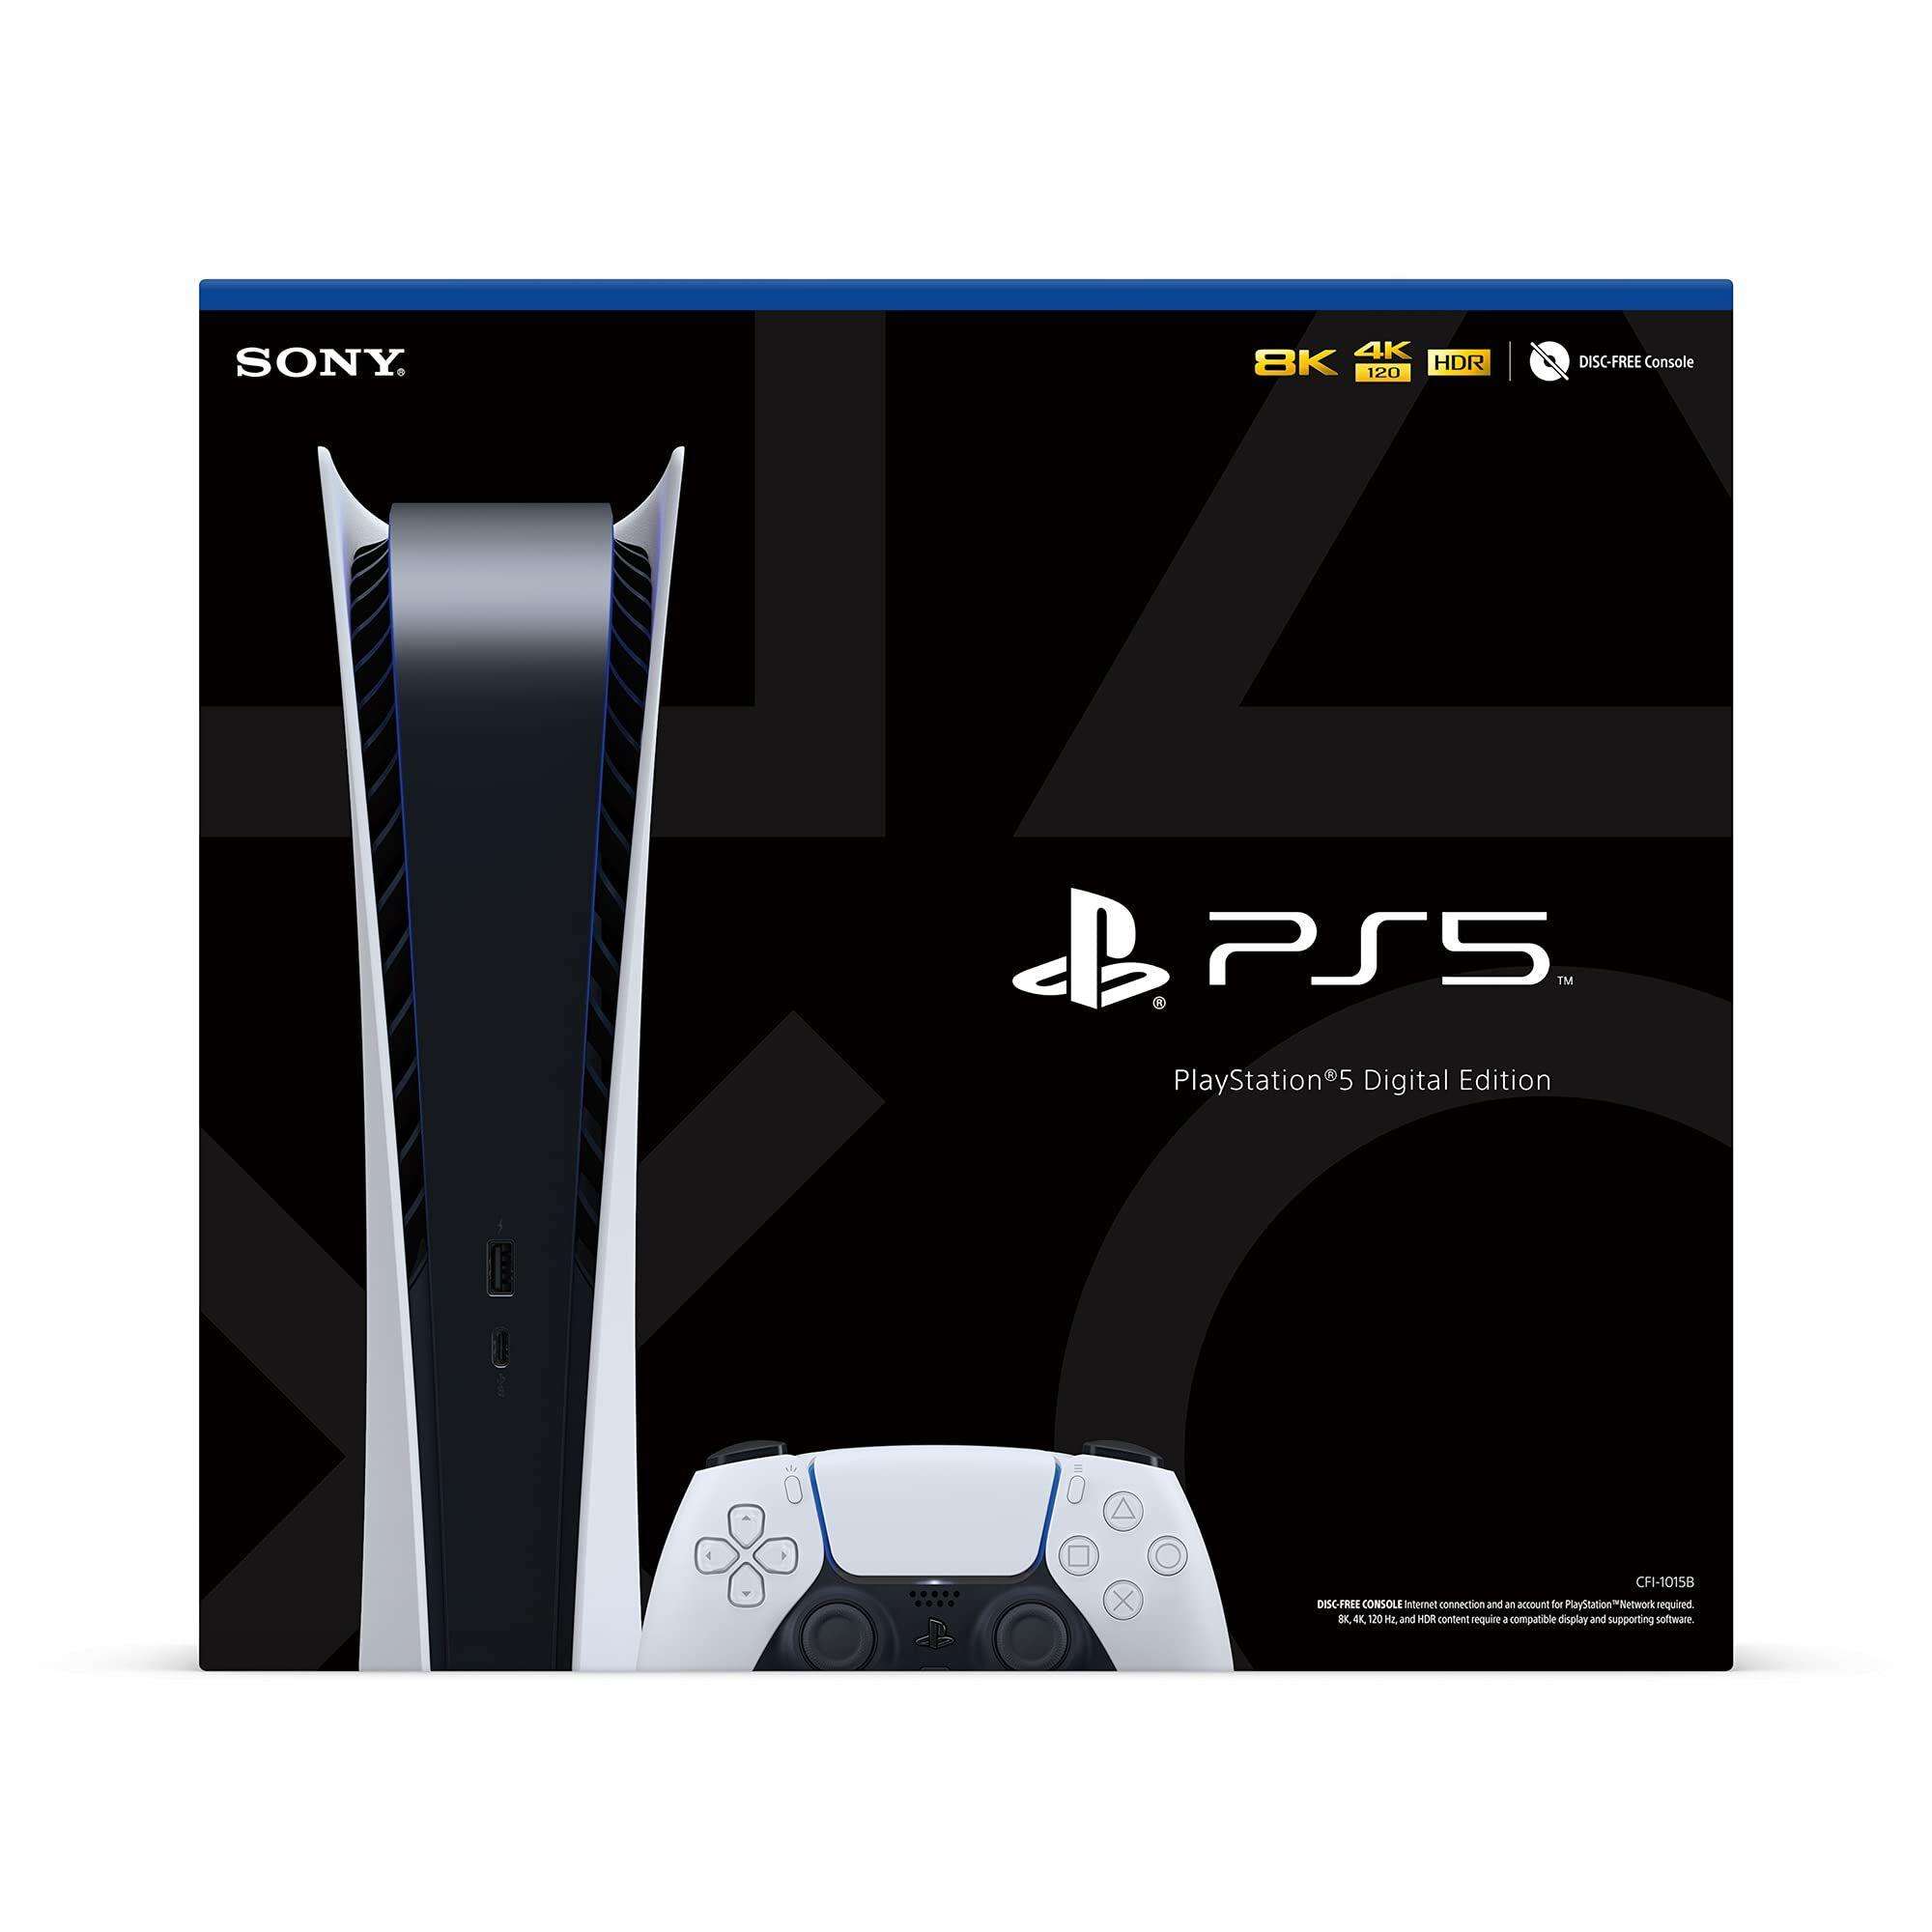 Soporte horizontal delgado Ps5, soporte horizontal compatible con la nueva  Playstation 5 Slim Disc y edición digital, soporte horizontal para consola PS5  Slim